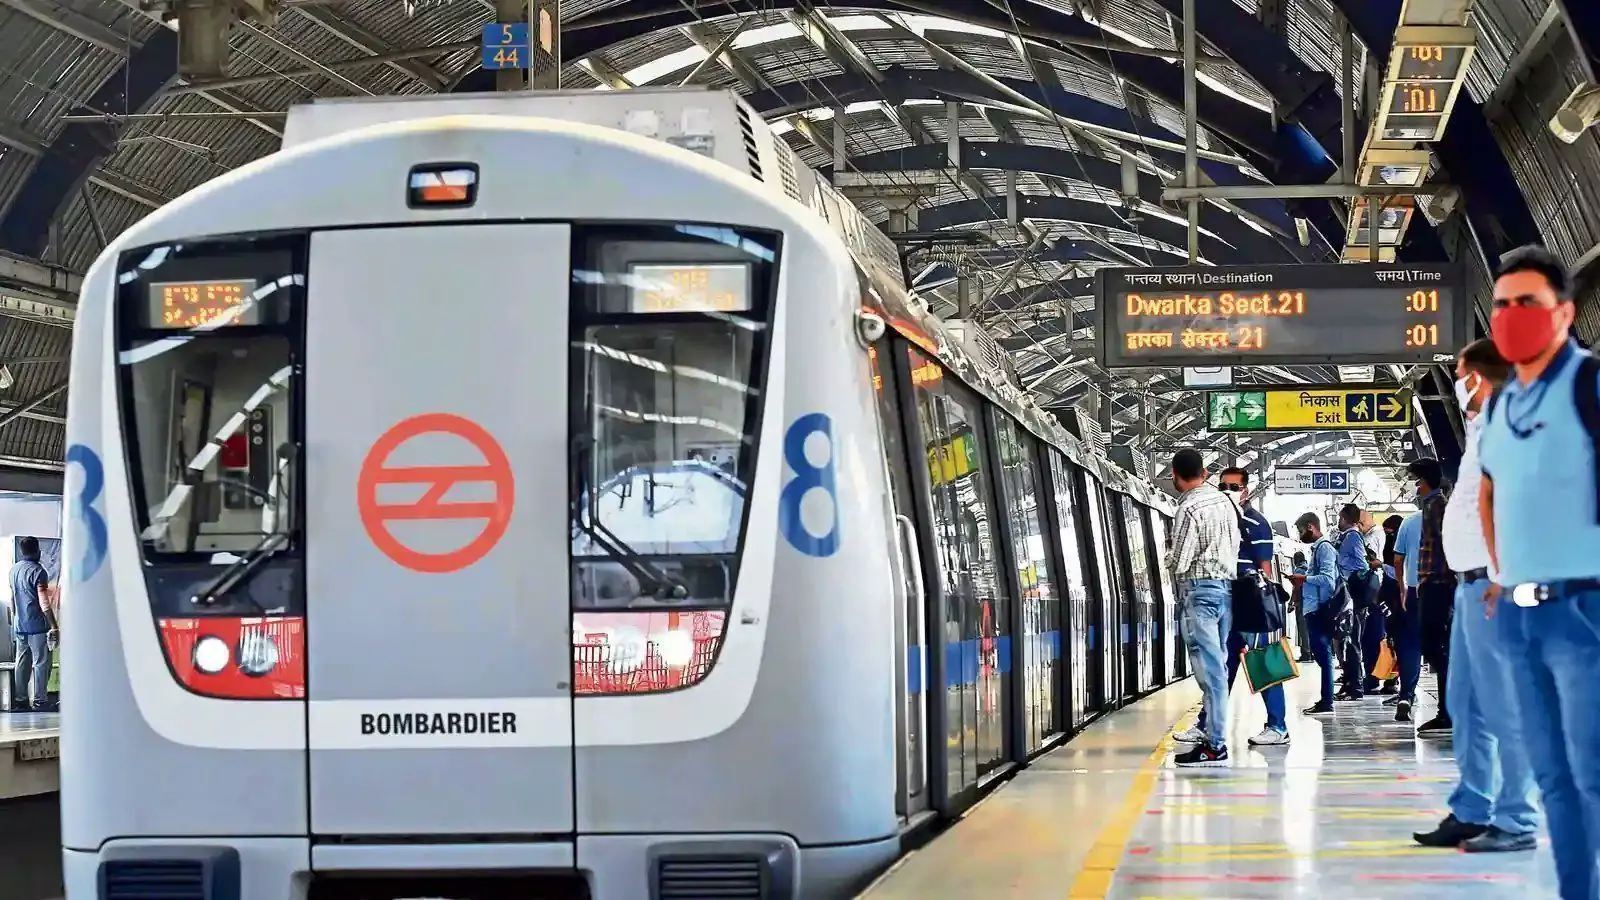 Delhi Metro : ग्रीन, पिंक और वायलेट लाइन पर अफरातफरी, 3 घंटे बाद सामान्य हुईं मेट्रो सेवाएं